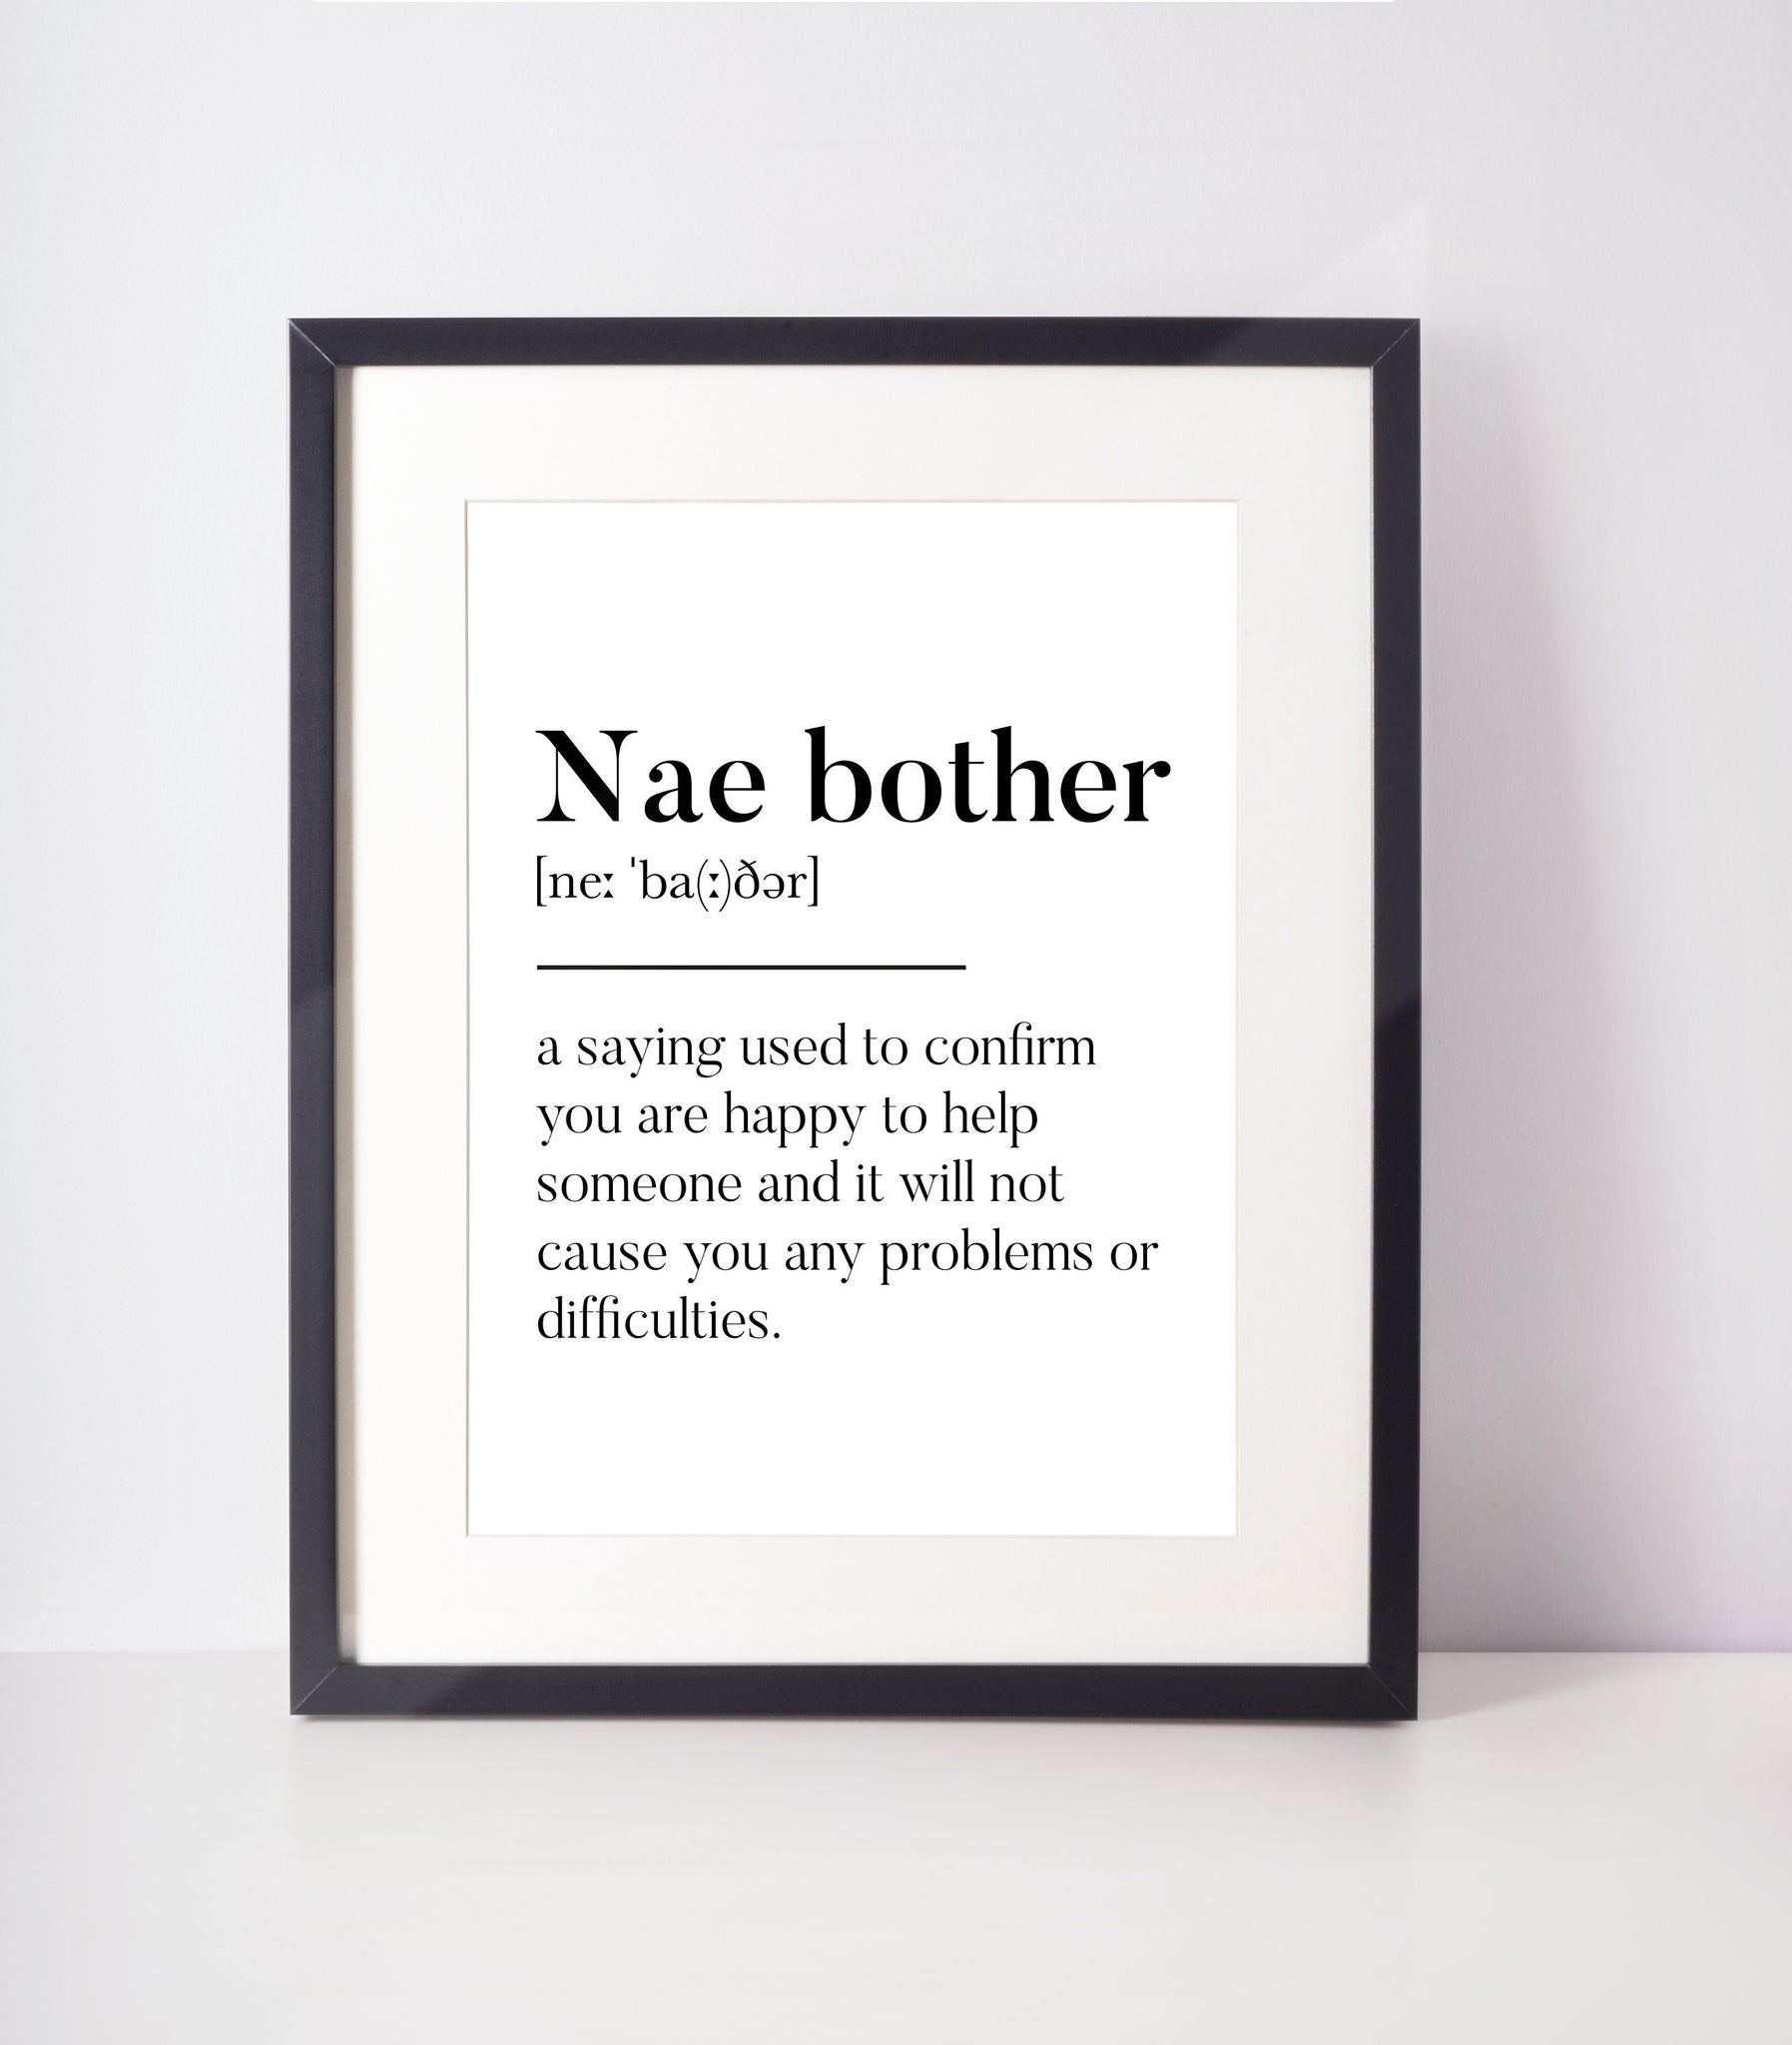 Nae bother Scottish Slang Definition Unframed Print